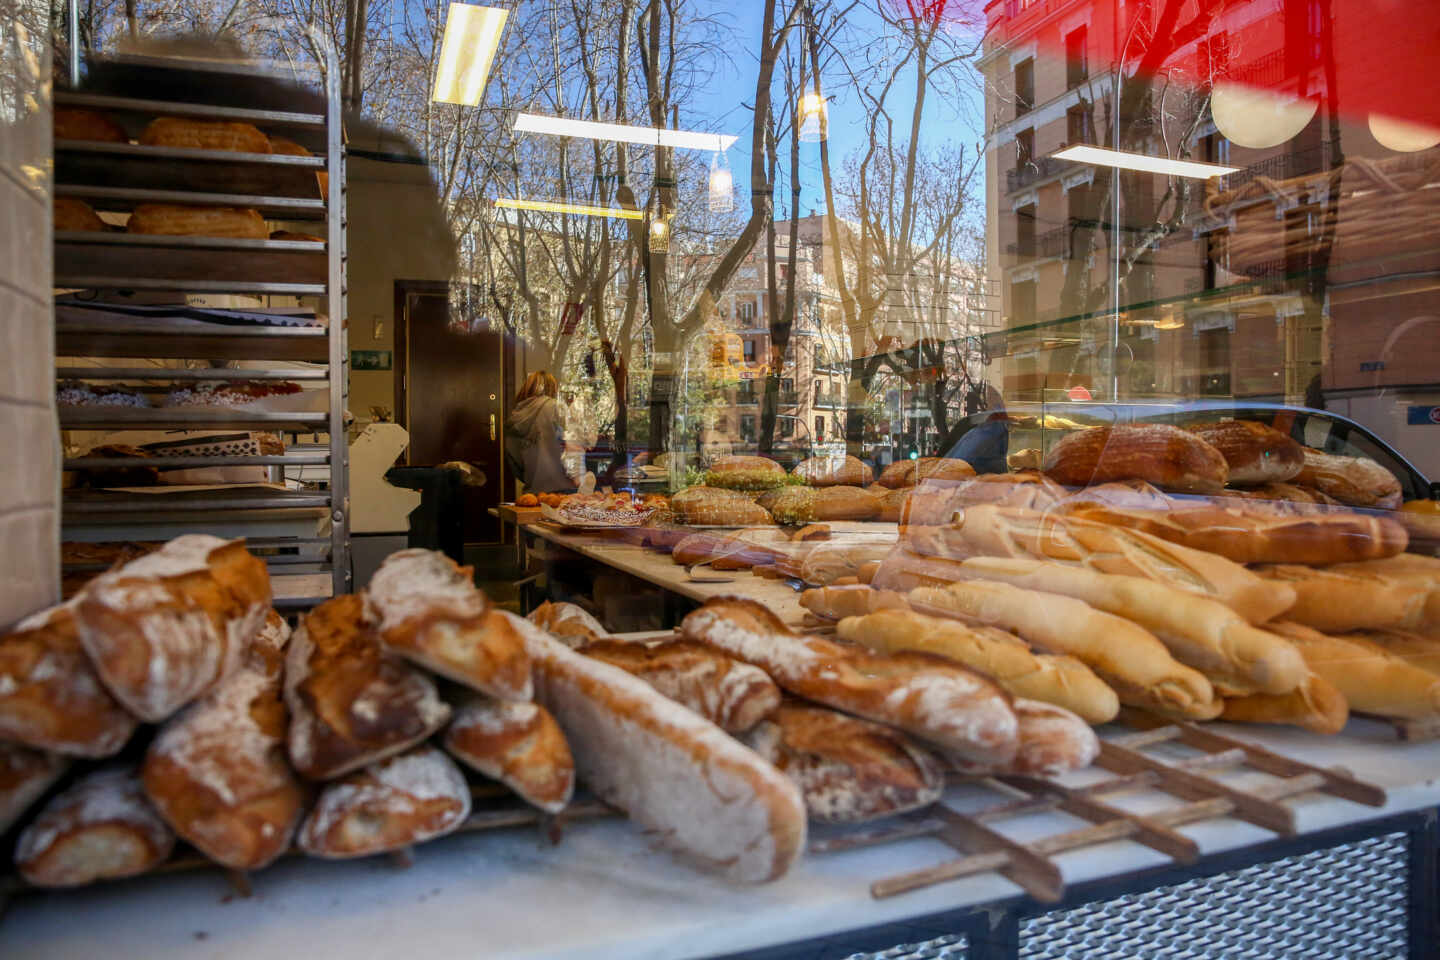 Las ventas de pan y bollería registran una caída sin precedentes en España por la pandemia